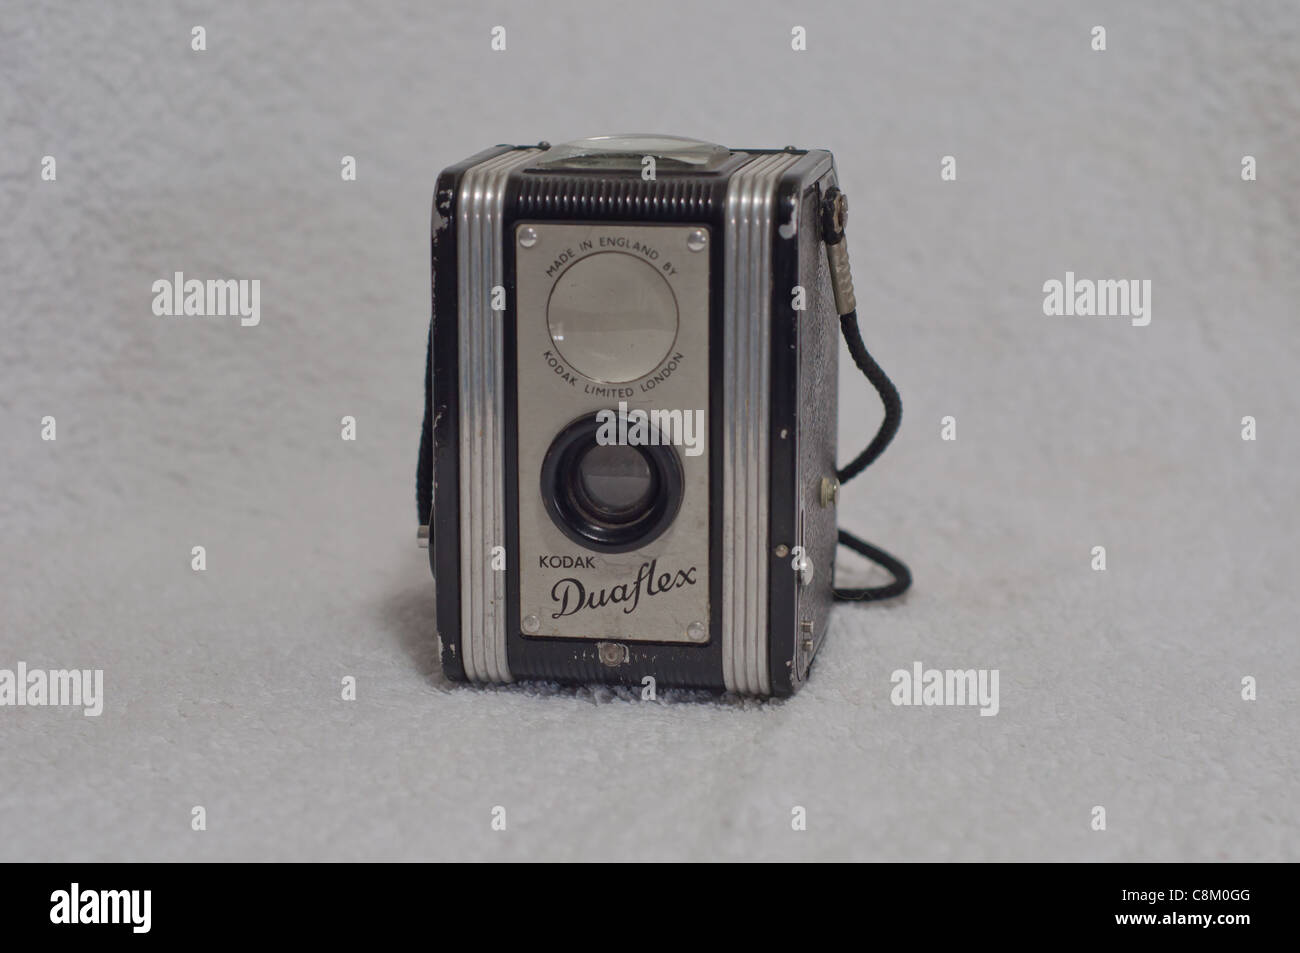 Die Kodak Duaflex ist ein 620 Rollfilm Kamera, mit einem bakelitkörper und standen mit einem einfachen Fixed Focus 75 mm f/15 1947 kodet Objektiv. Stockfoto